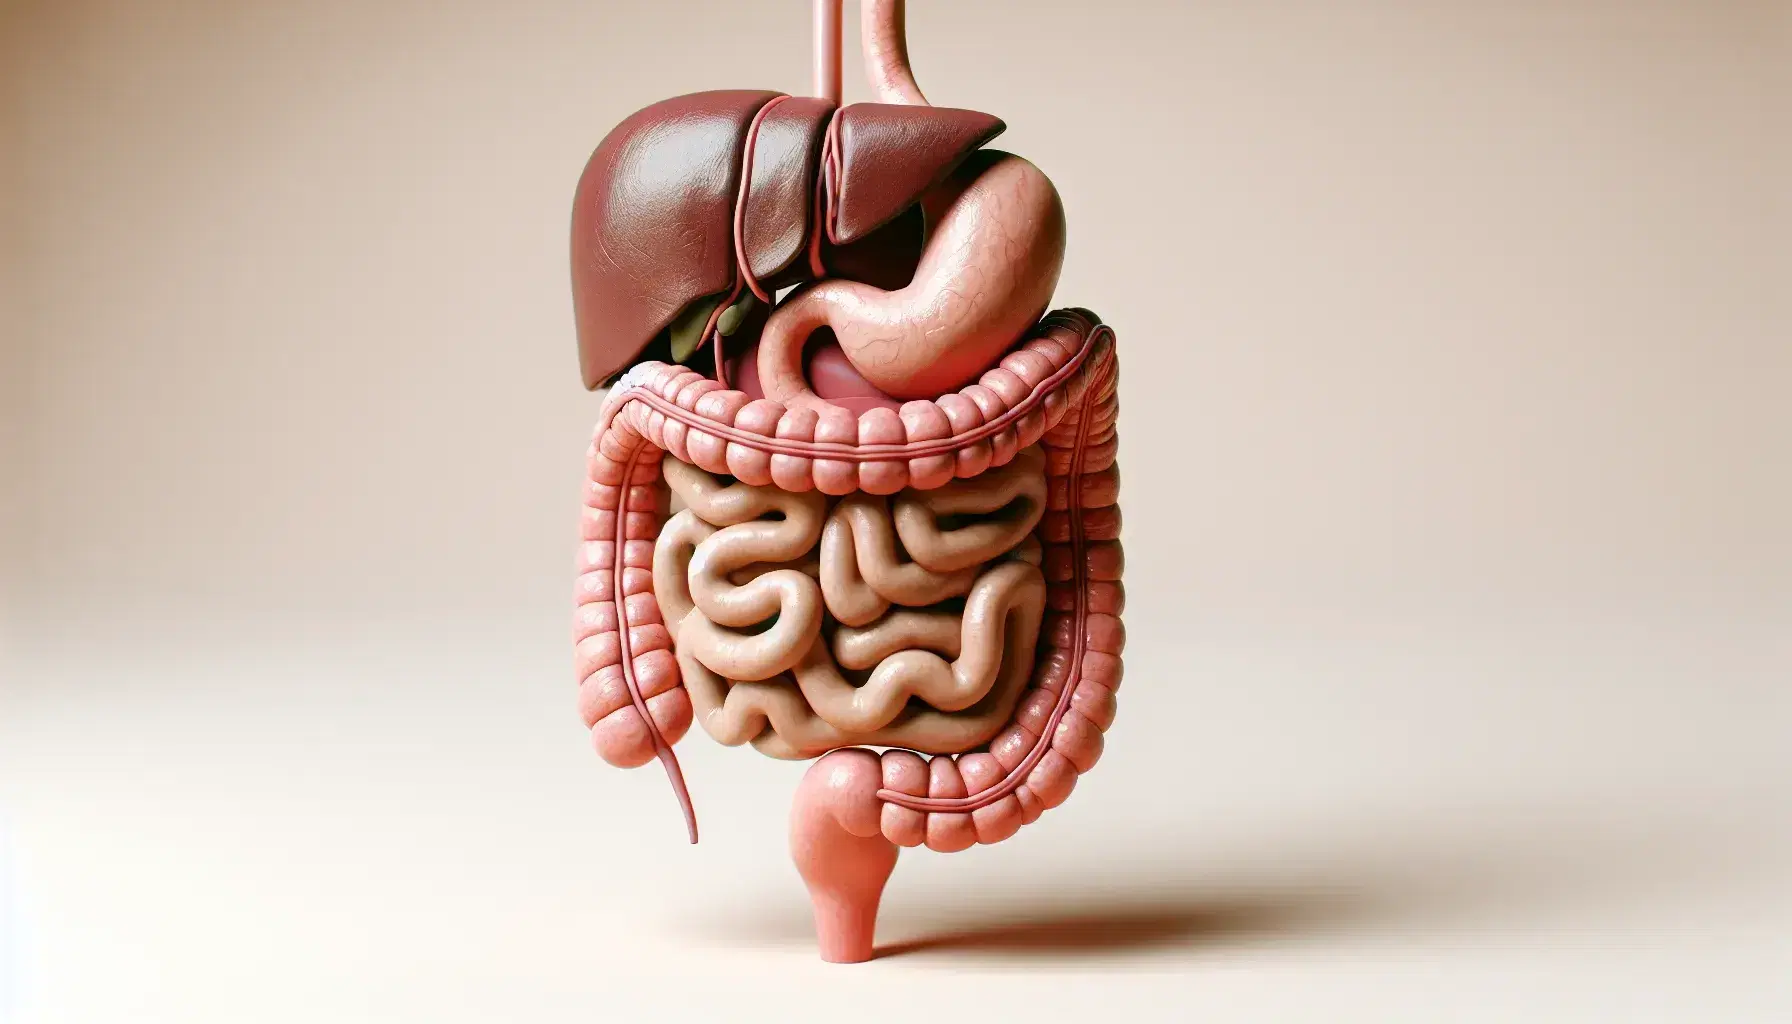 Modelo anatómico detallado del sistema digestivo humano con esófago, estómago, intestinos, hígado, vesícula biliar y páncreas en colores realistas sobre fondo neutro.